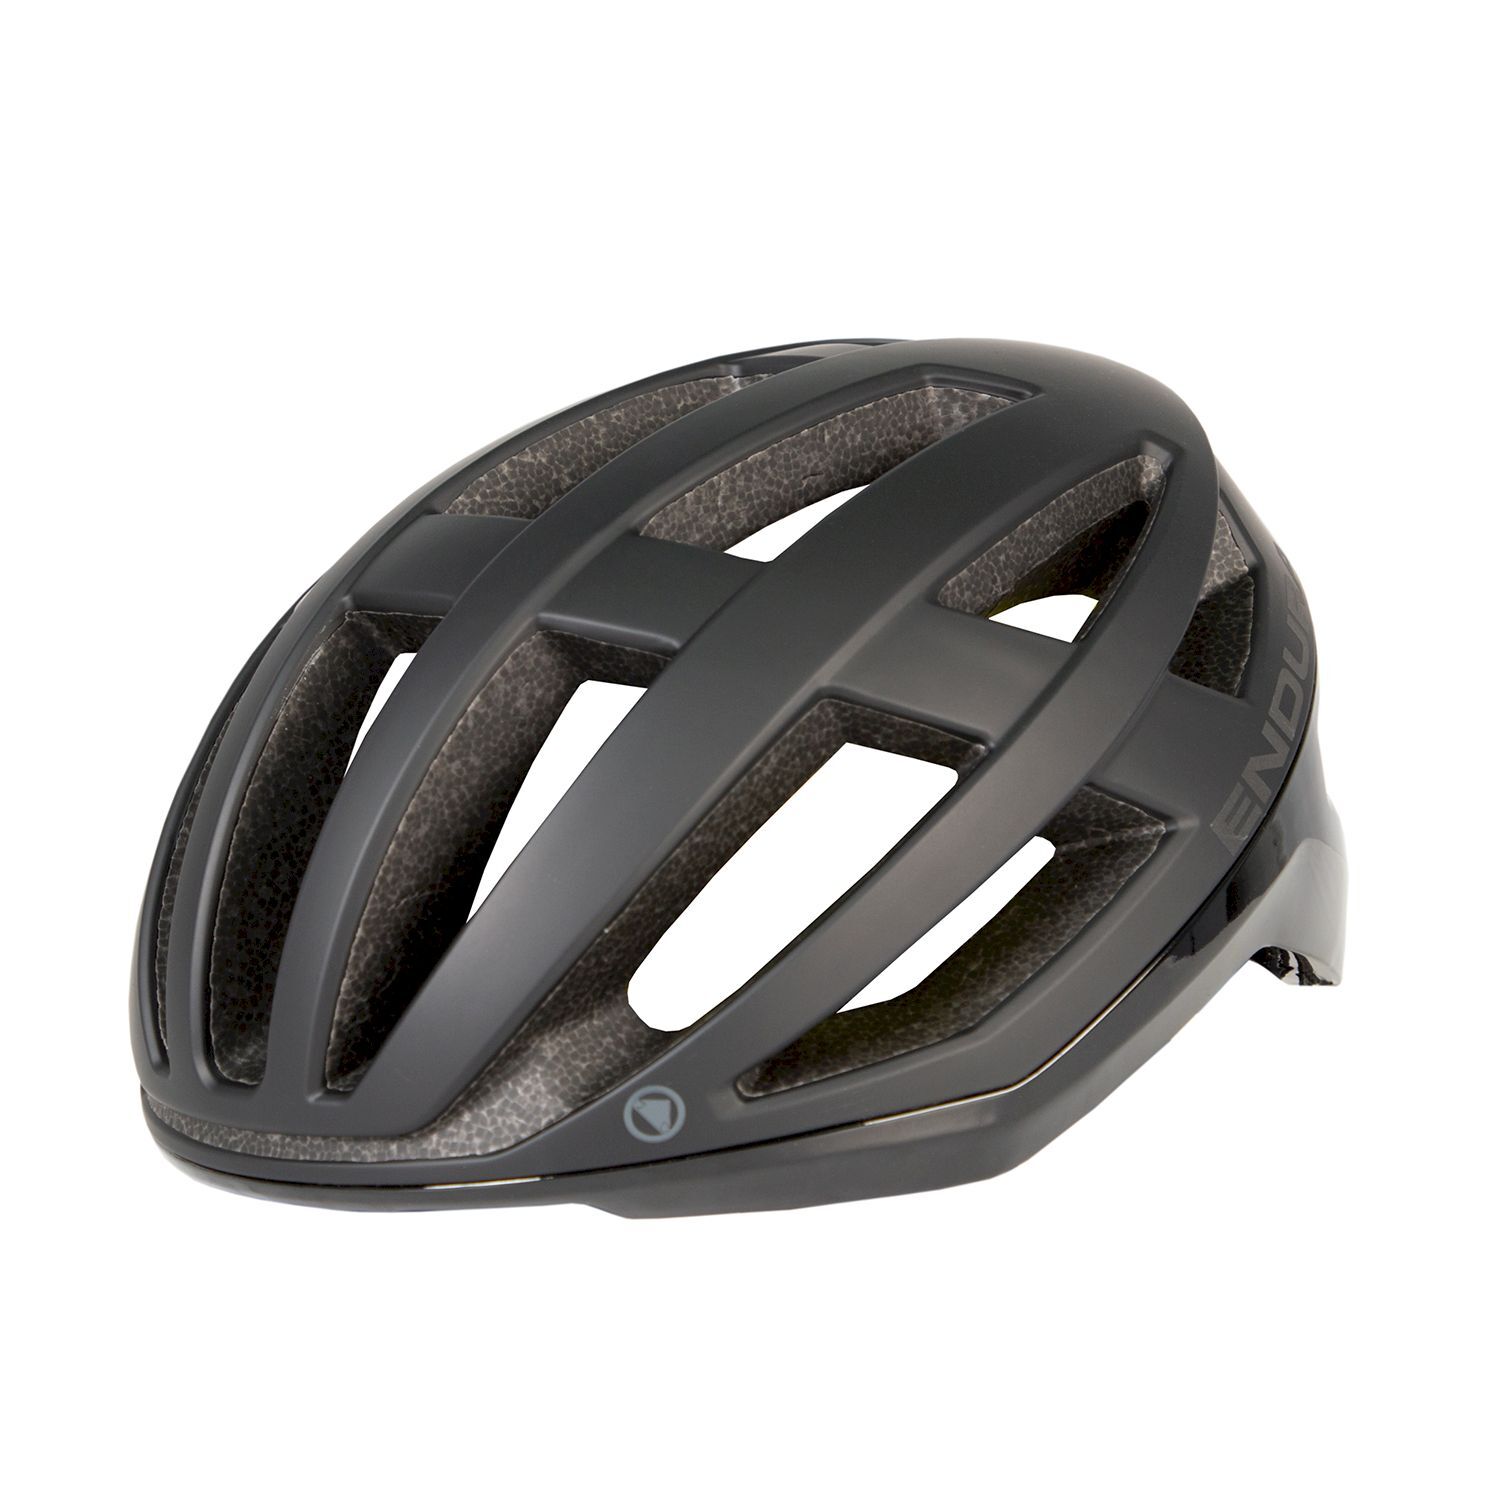 Endura FS260-Pro Helmet II - Road bike helmet - Men's